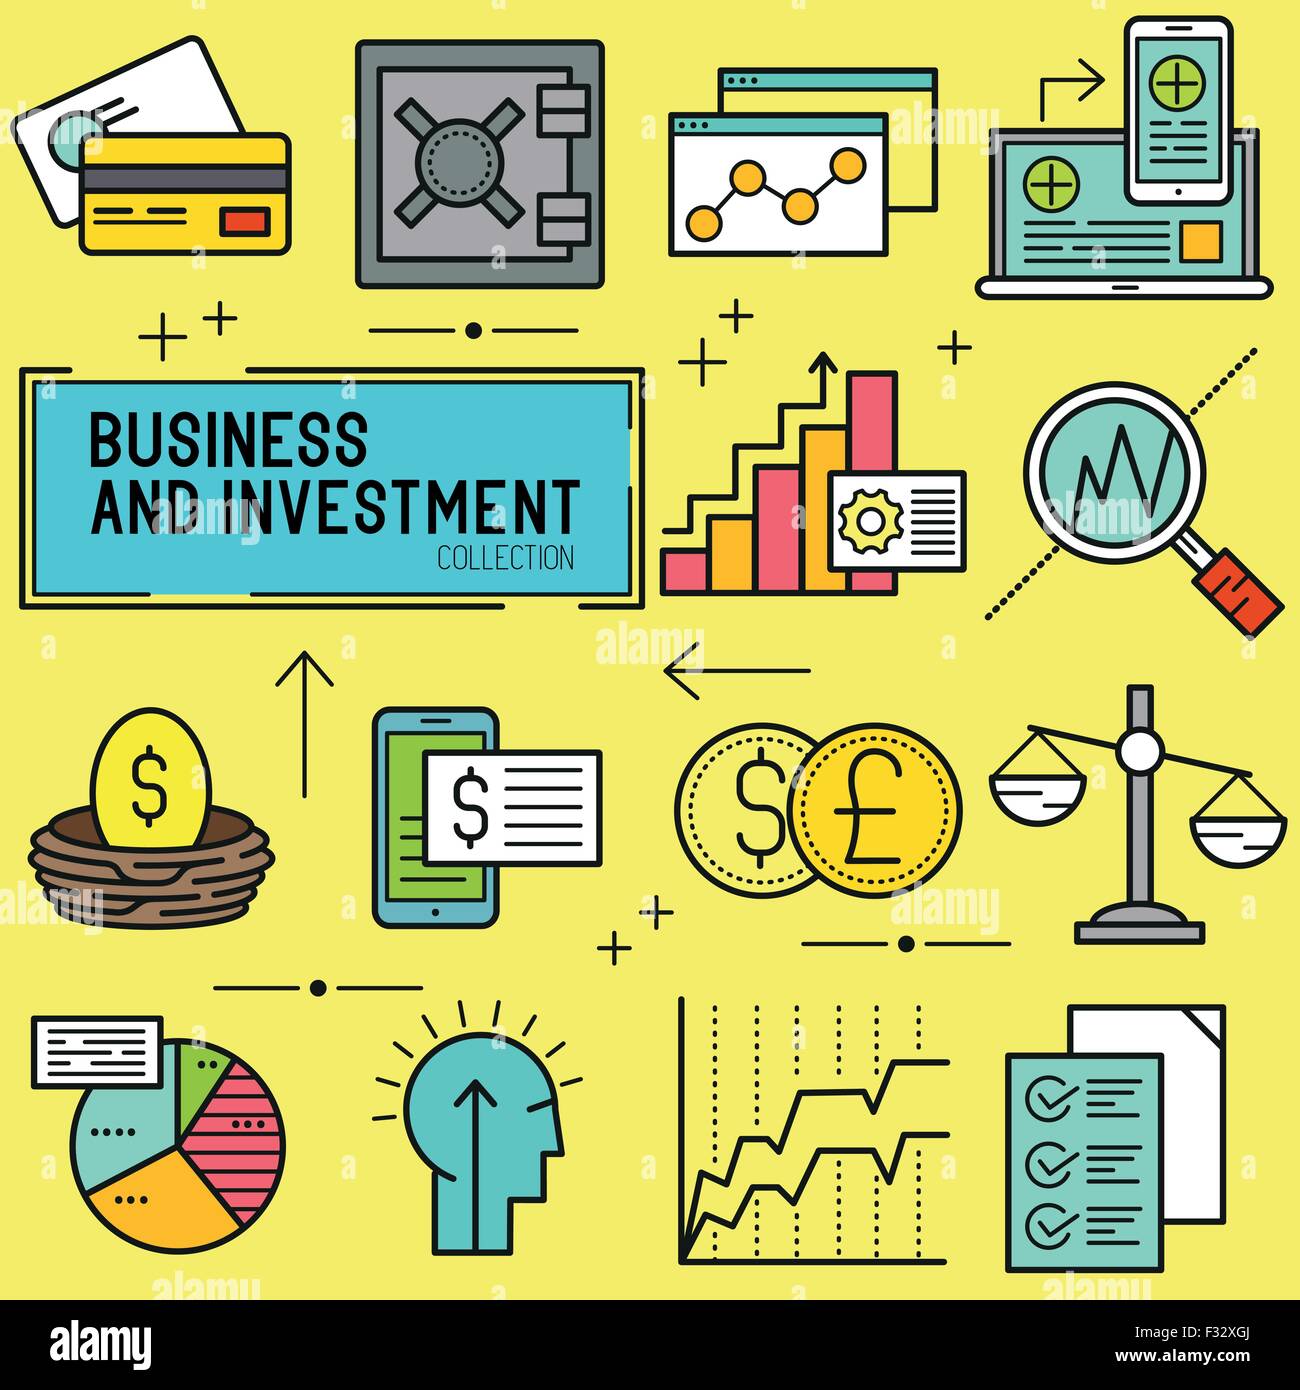 Wirtschaft und Investition Vektor.  Eine Sammlung von geschäftlichen und finanziellen Themen Linie Symbole, einschließlich Diagramme, finanzielle Elemente Stock Vektor